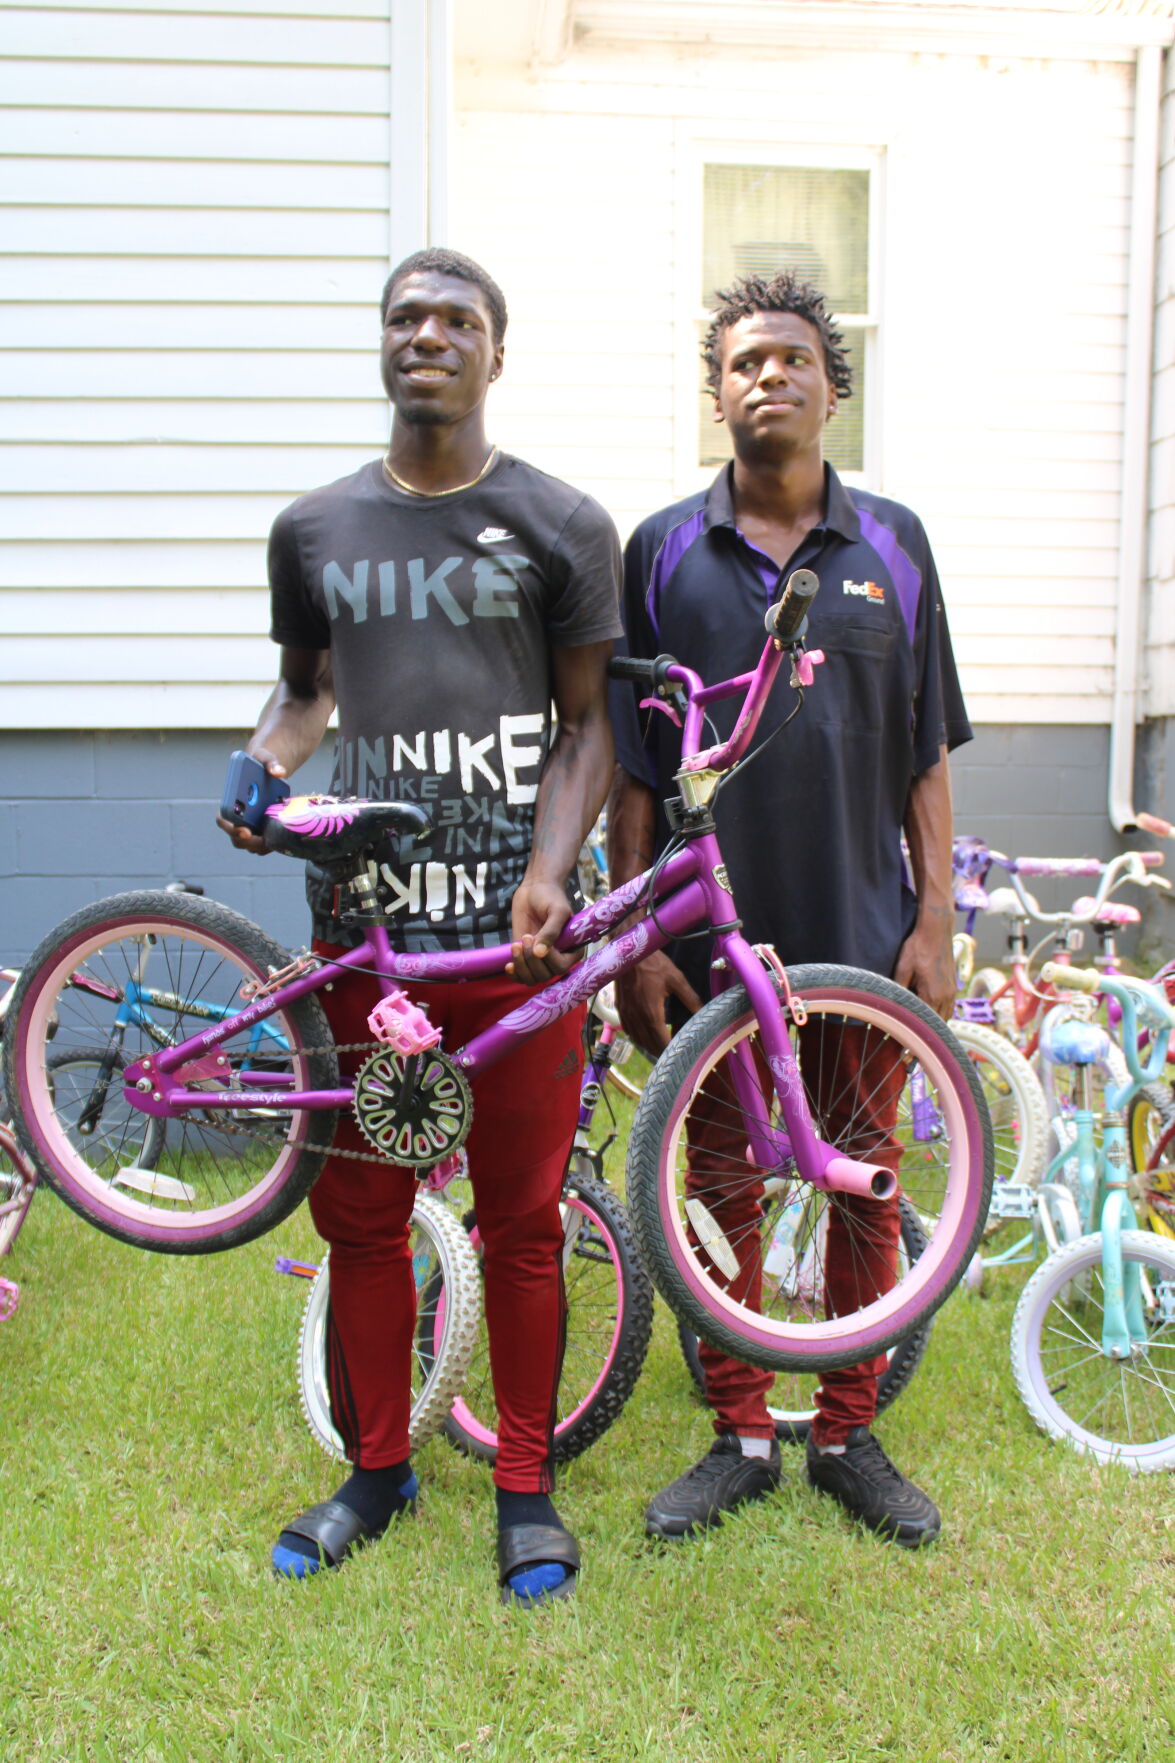 Brother picks bike for little sister